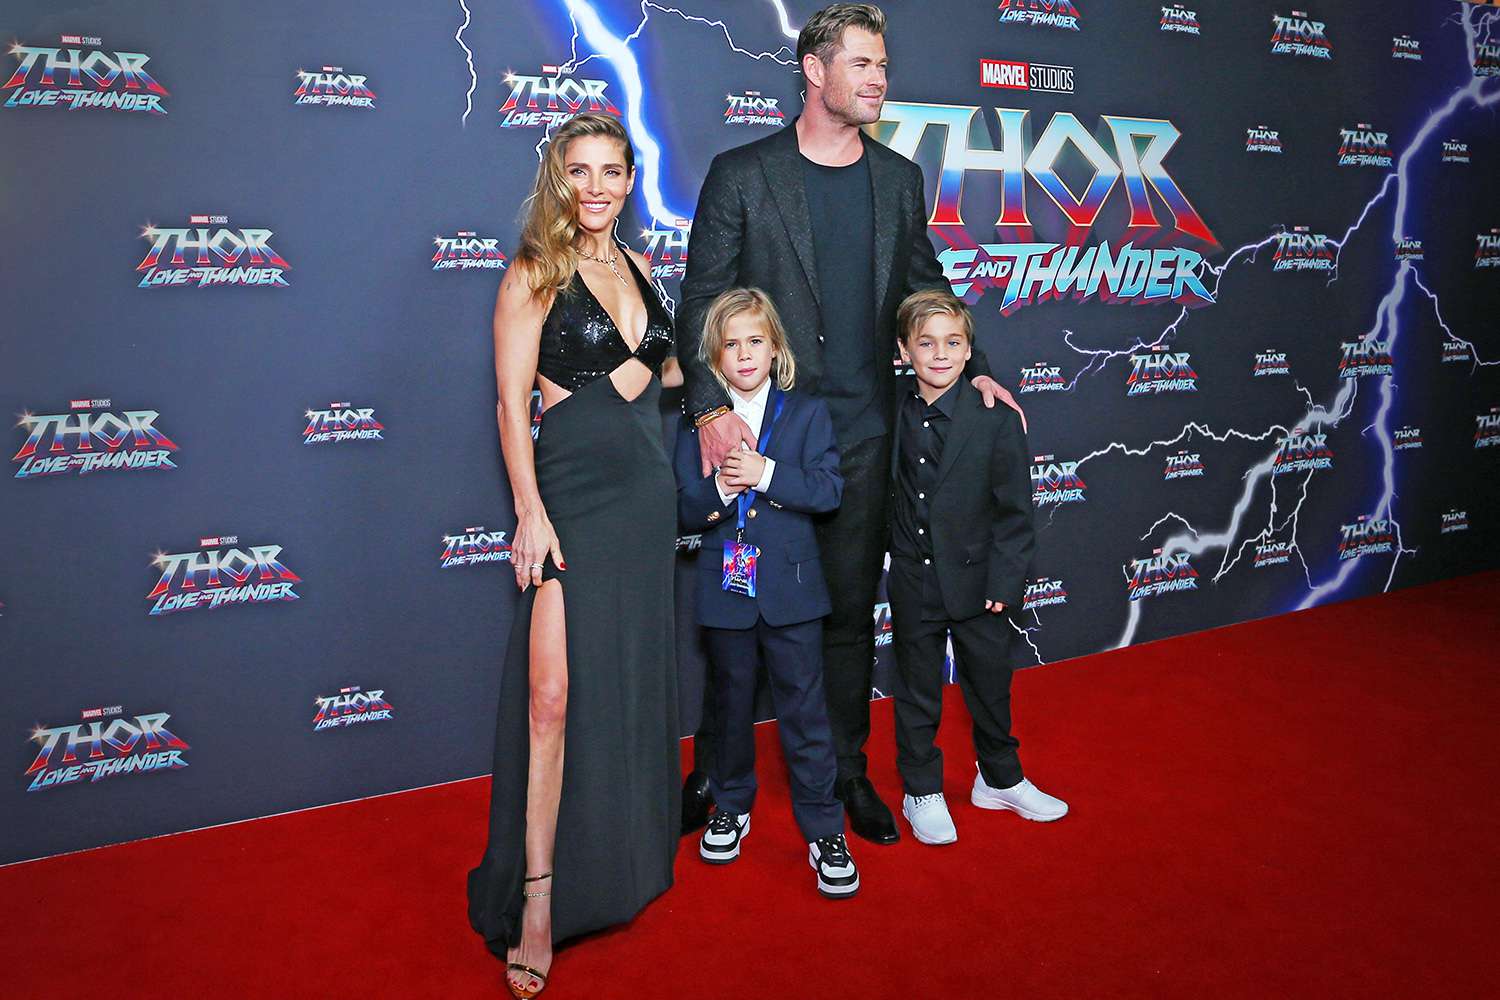 Chris Hemsworth and Elsa Pataky's Family